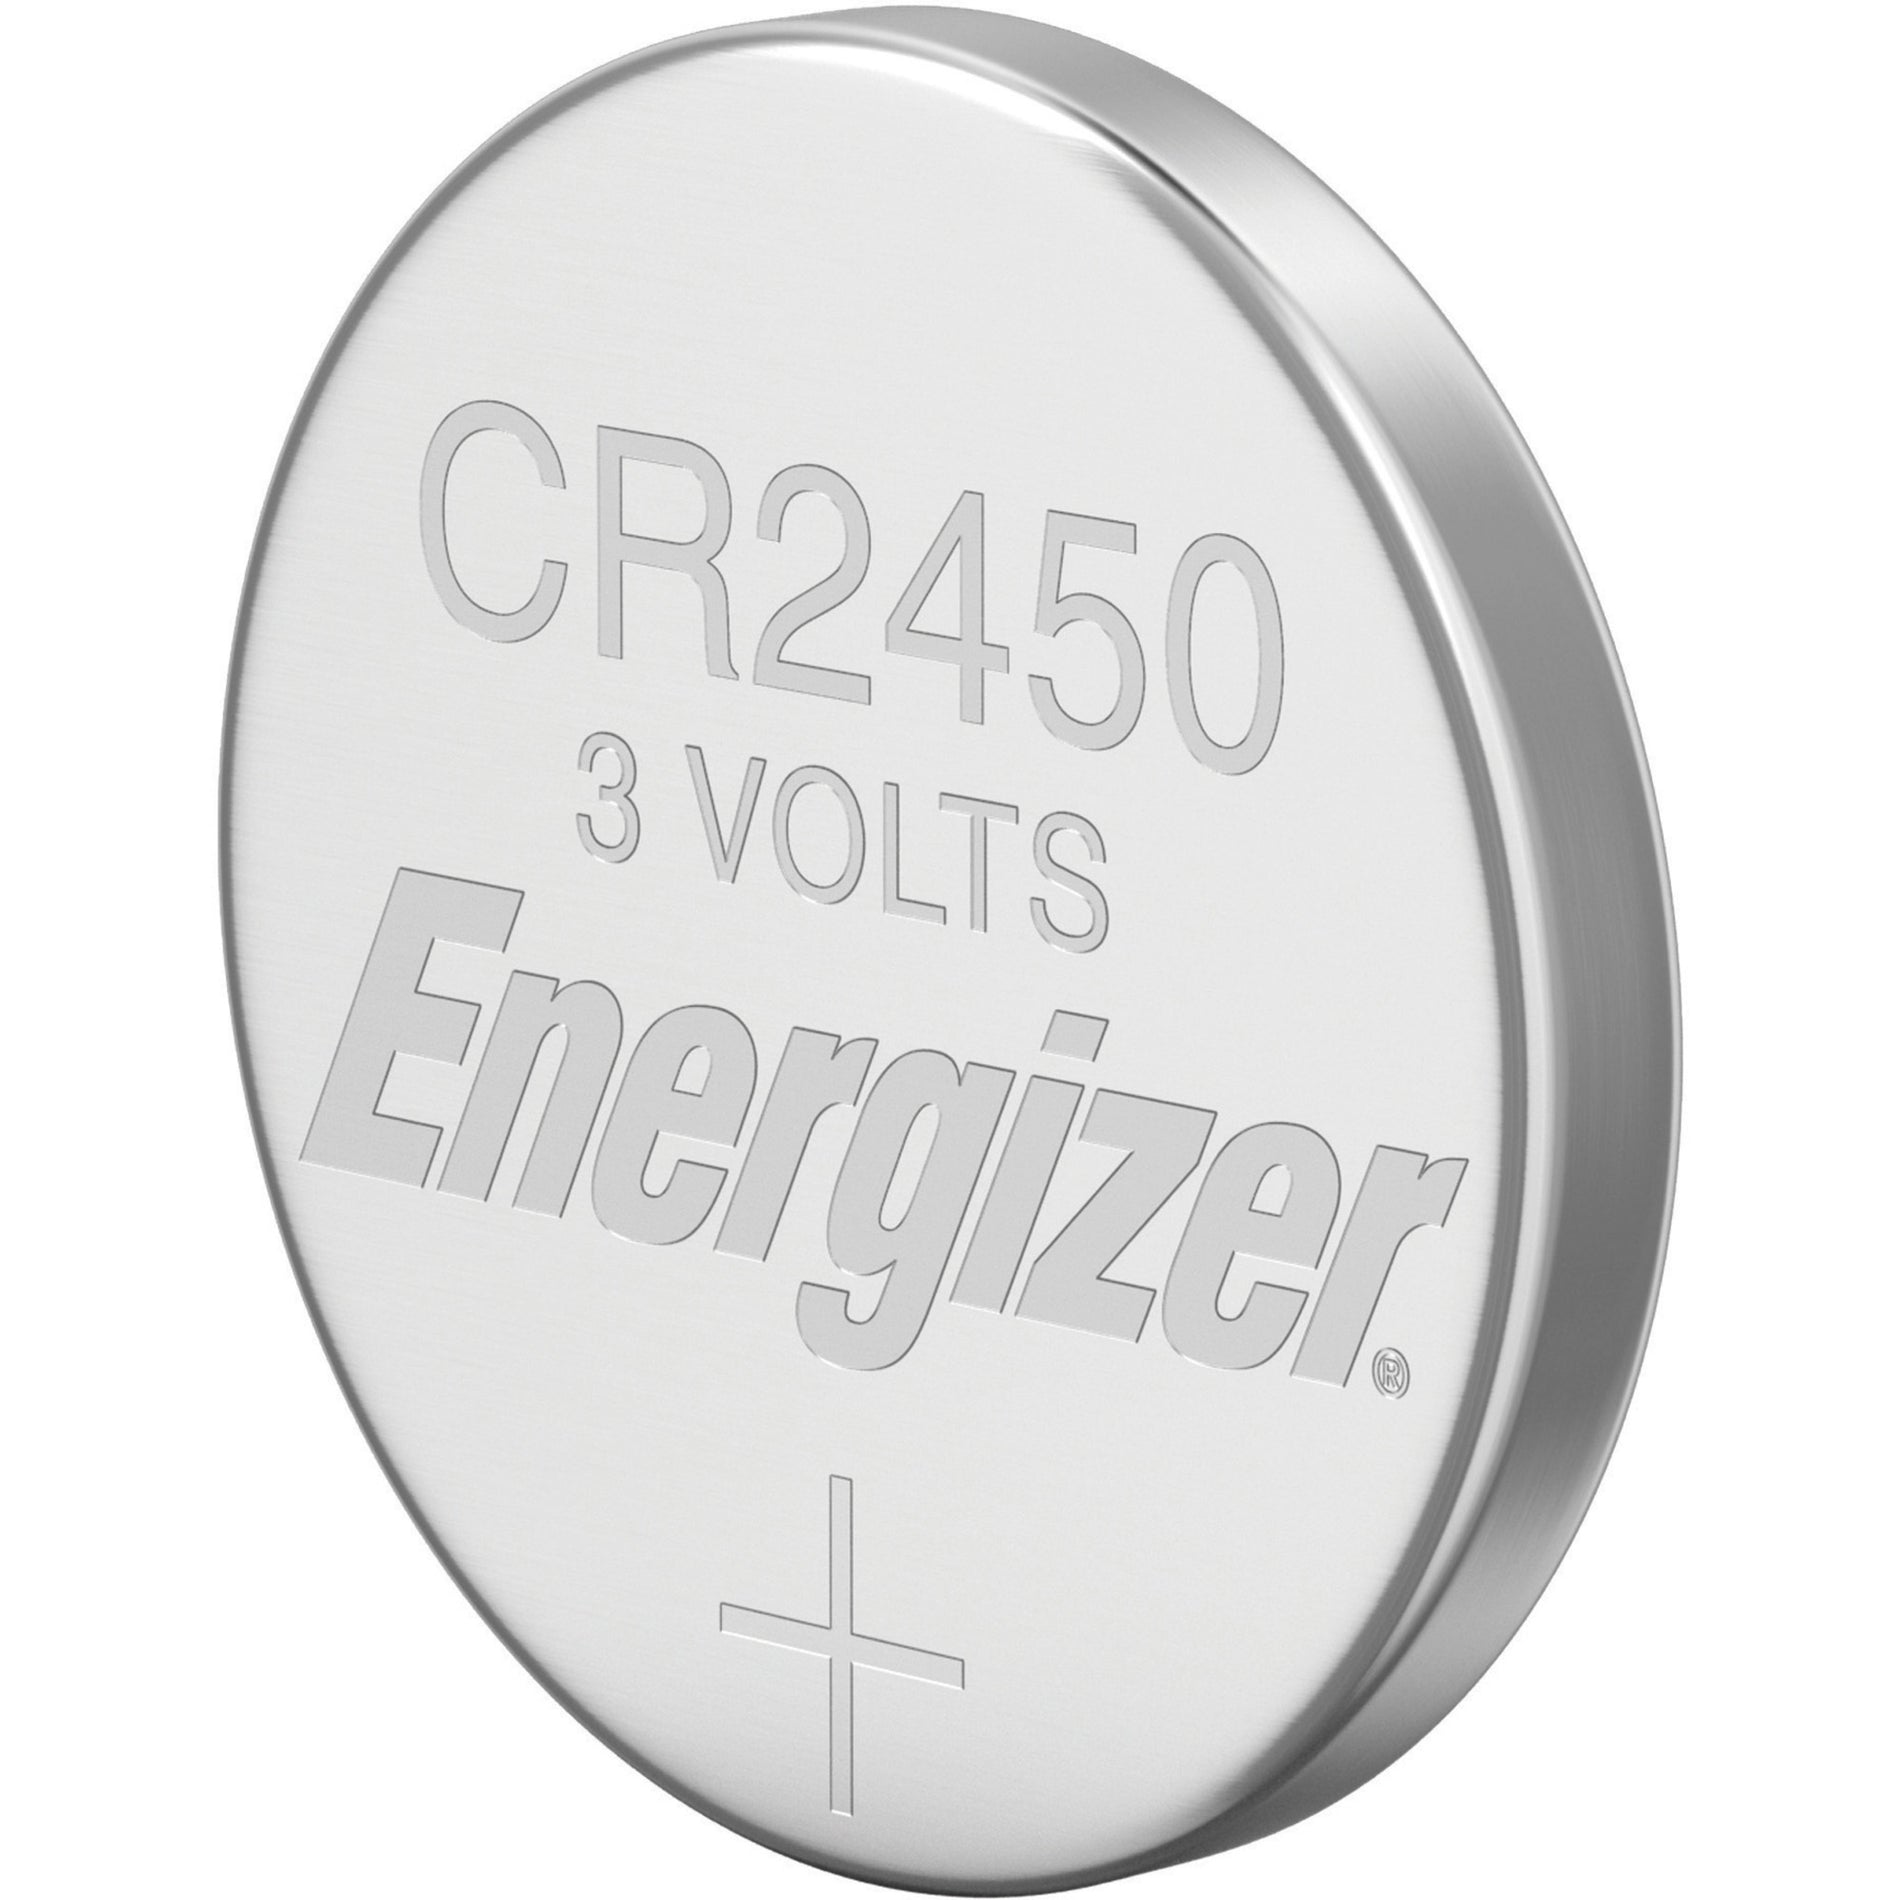 Energizer ECR2450BP 2450 Lithium Coin Battery, 3V DC, Multipurpose